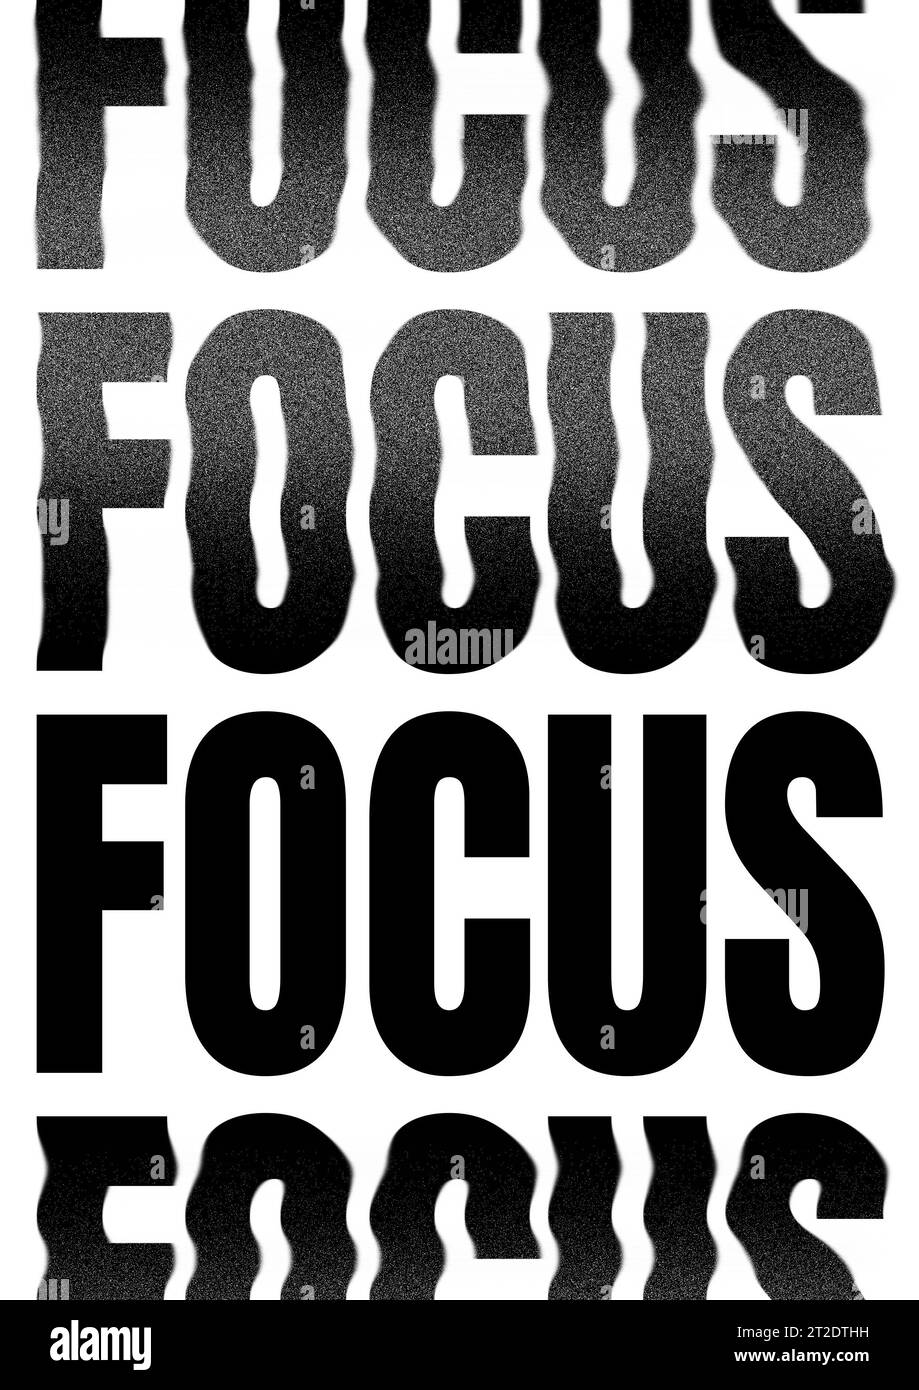 Poster Focus per la decorazione di uffici, camere da letto, citazioni motivazionali per il miglioramento personale Foto Stock